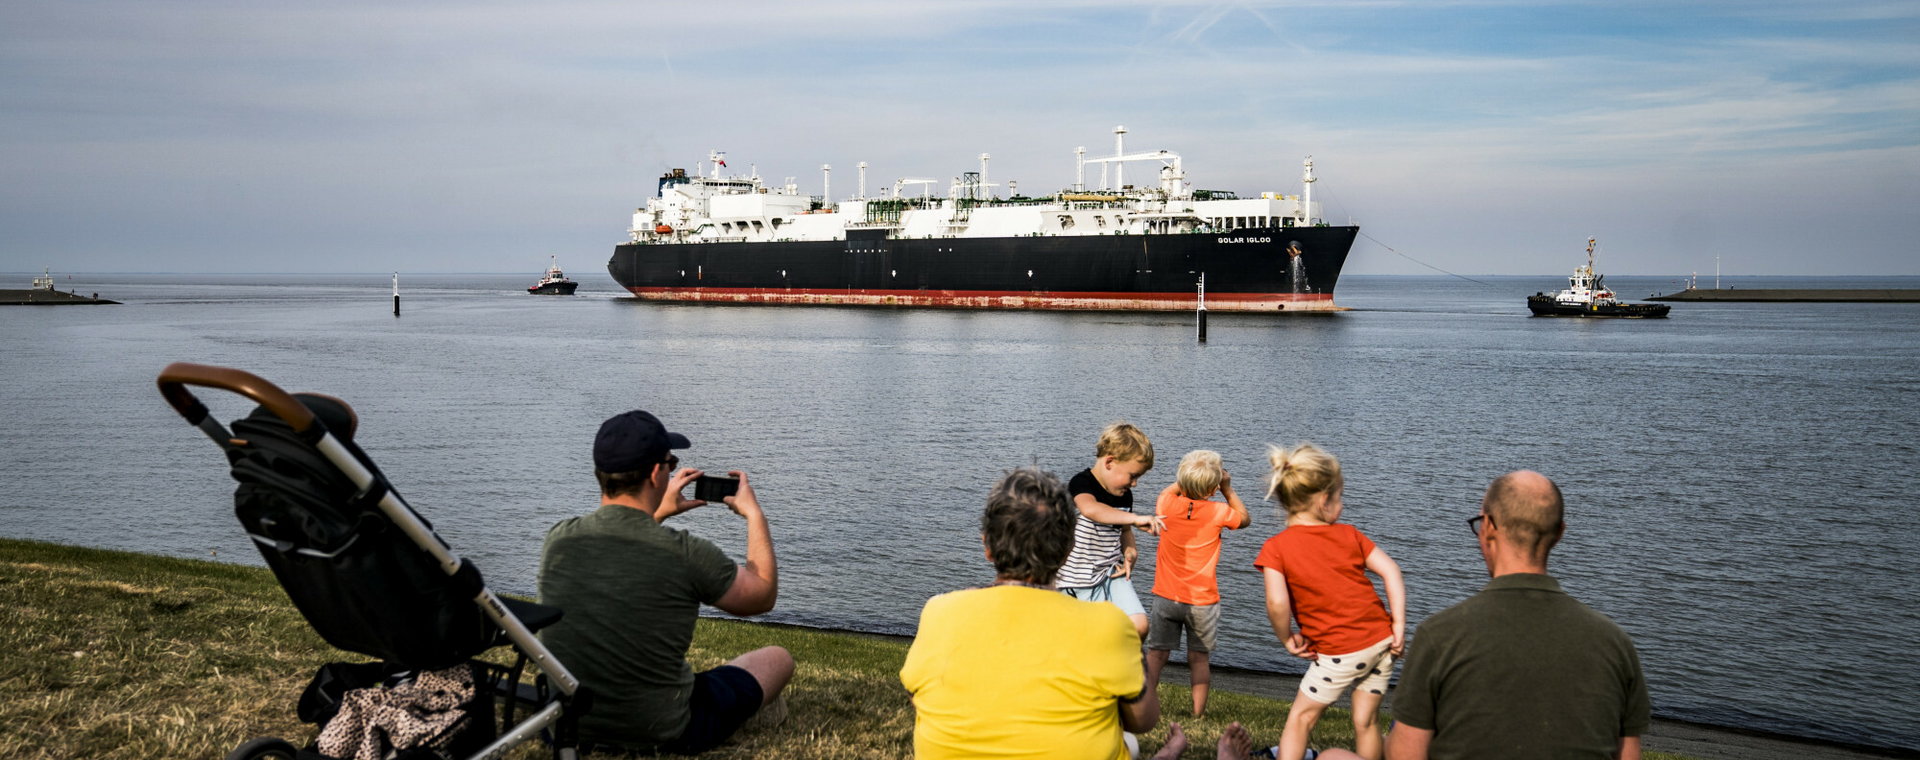 Pływający terminal LNG dociera do portu Eemshaven w Holandii, w pierwszej połowie września 2022 r. 